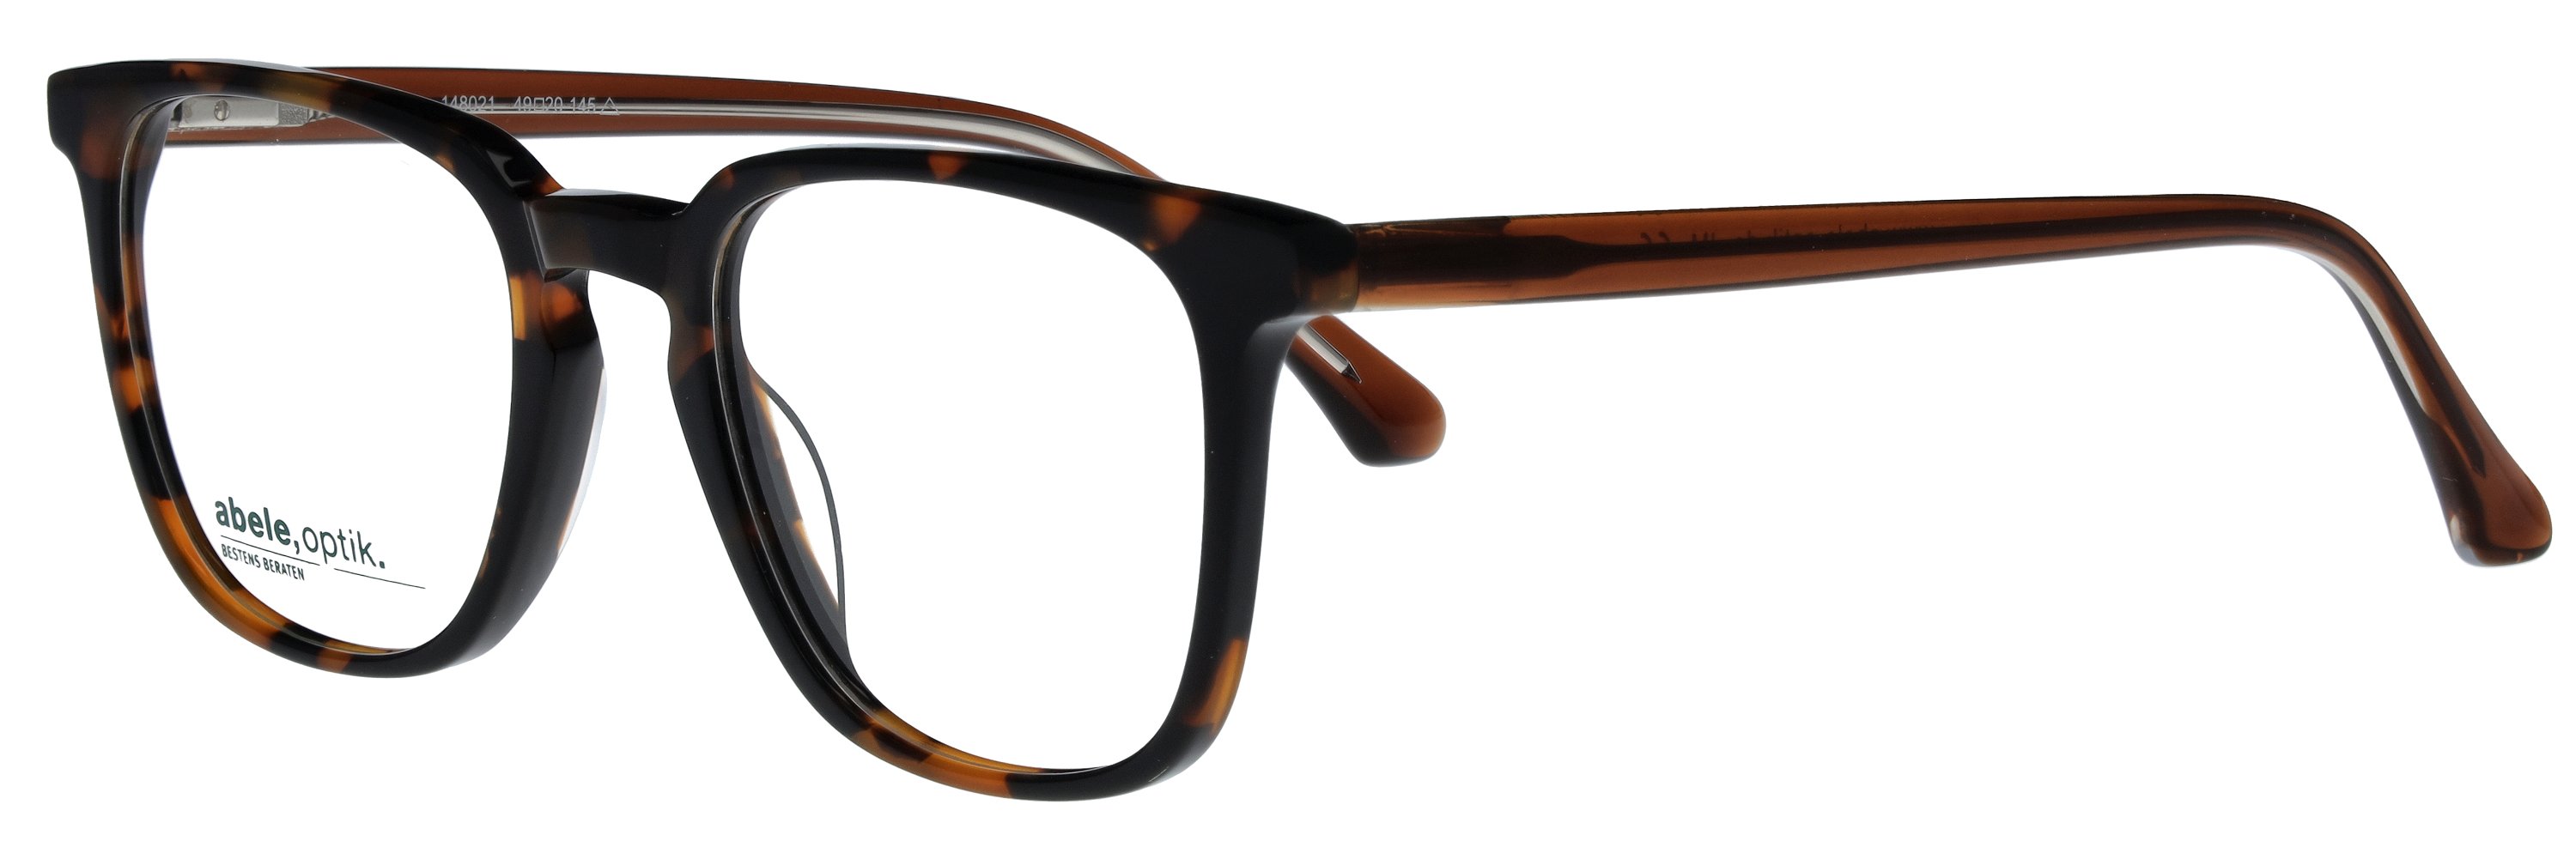 Das Bild zeigt die Korrektionsbrille 148021 von der Marke Abele Optik in havanna.